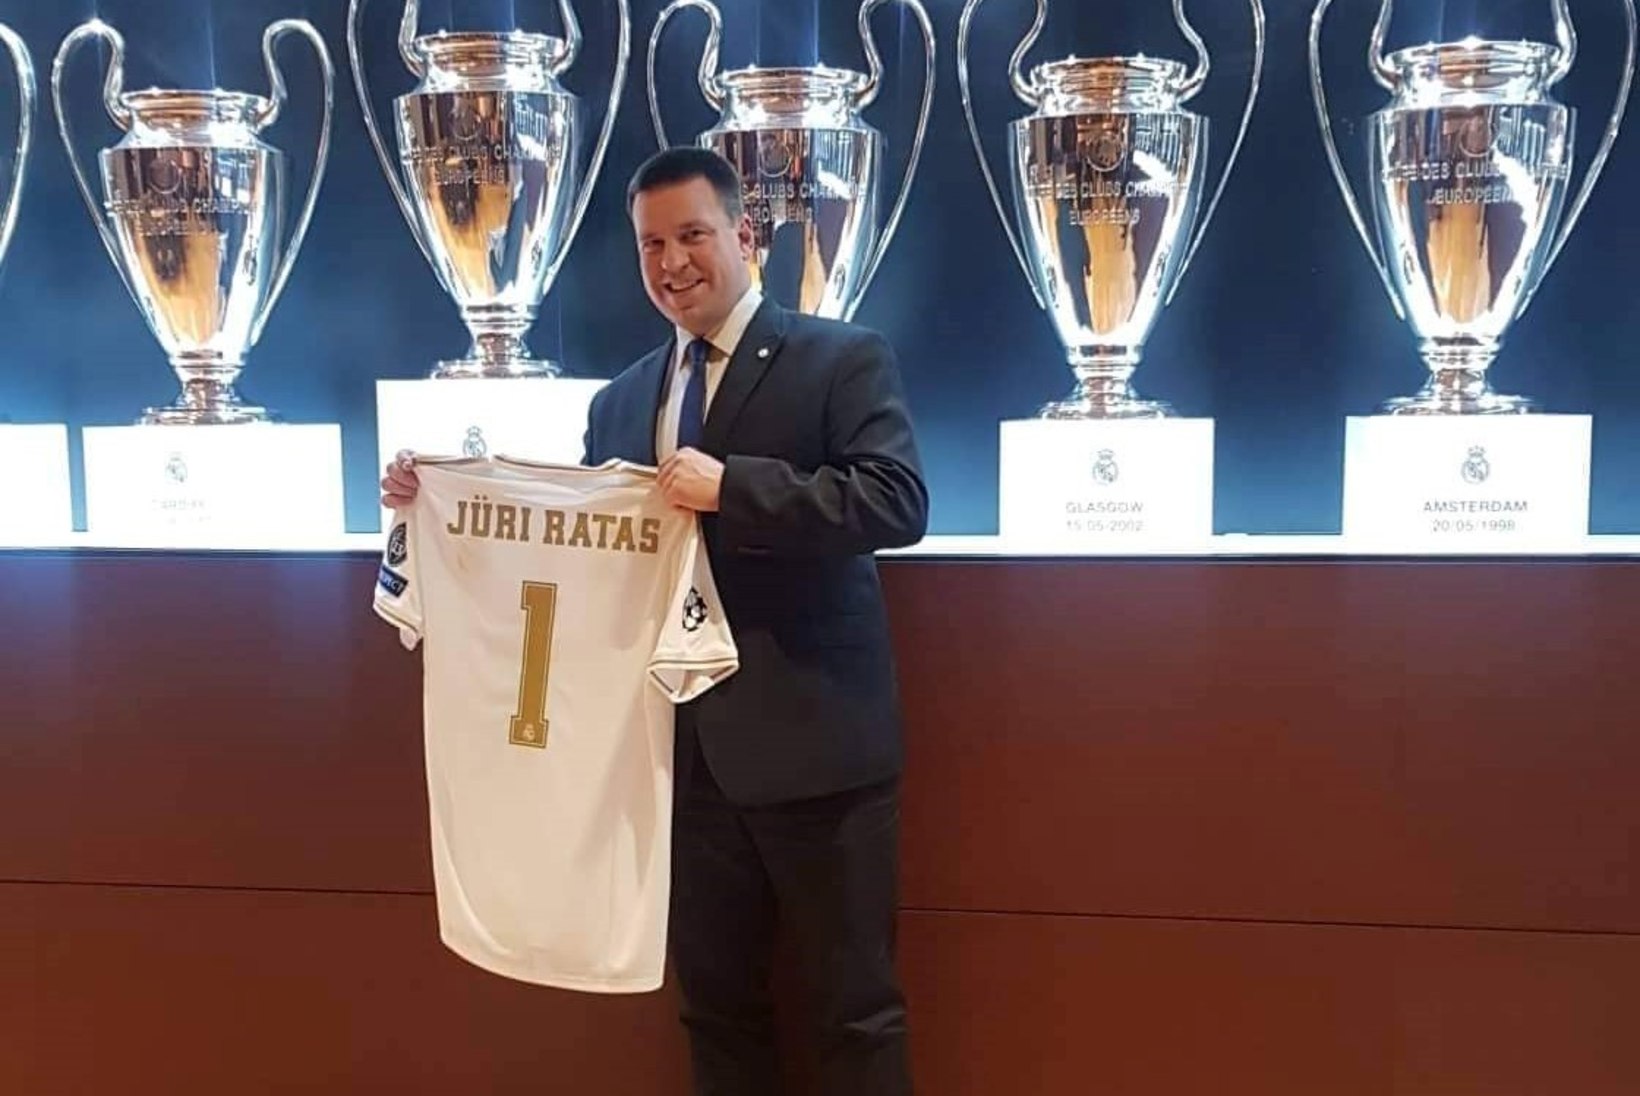 FOTOD | Kõva sõna! Peaminister Jüri Ratas külastas Madridi Reali staadionit ning sai omanimelise mängusärgi